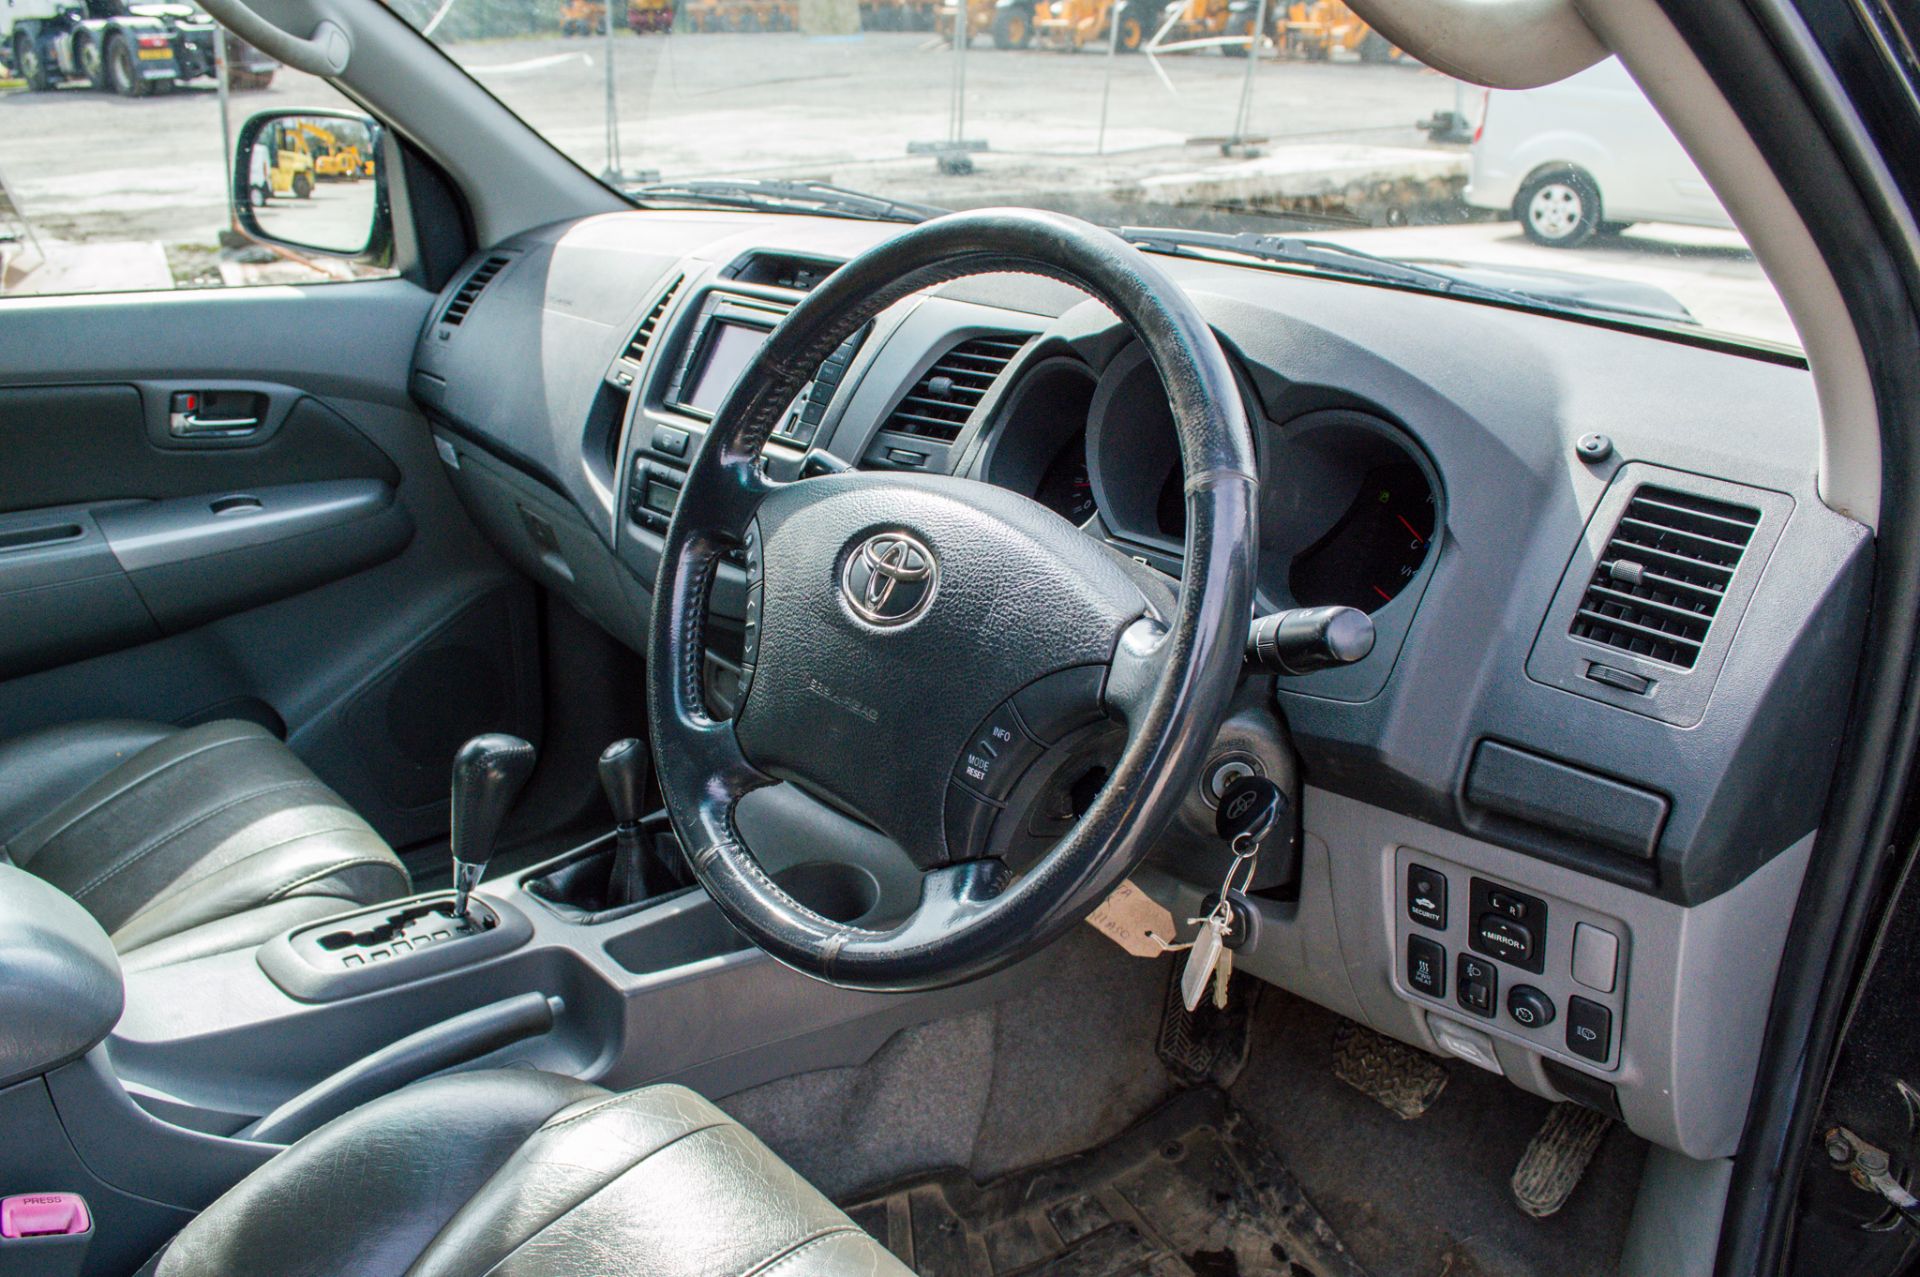 Toyota Hilux 3.0 D-4D 171 Invincible 4wd automatic double cab pick up (No VAT) - Image 25 of 30